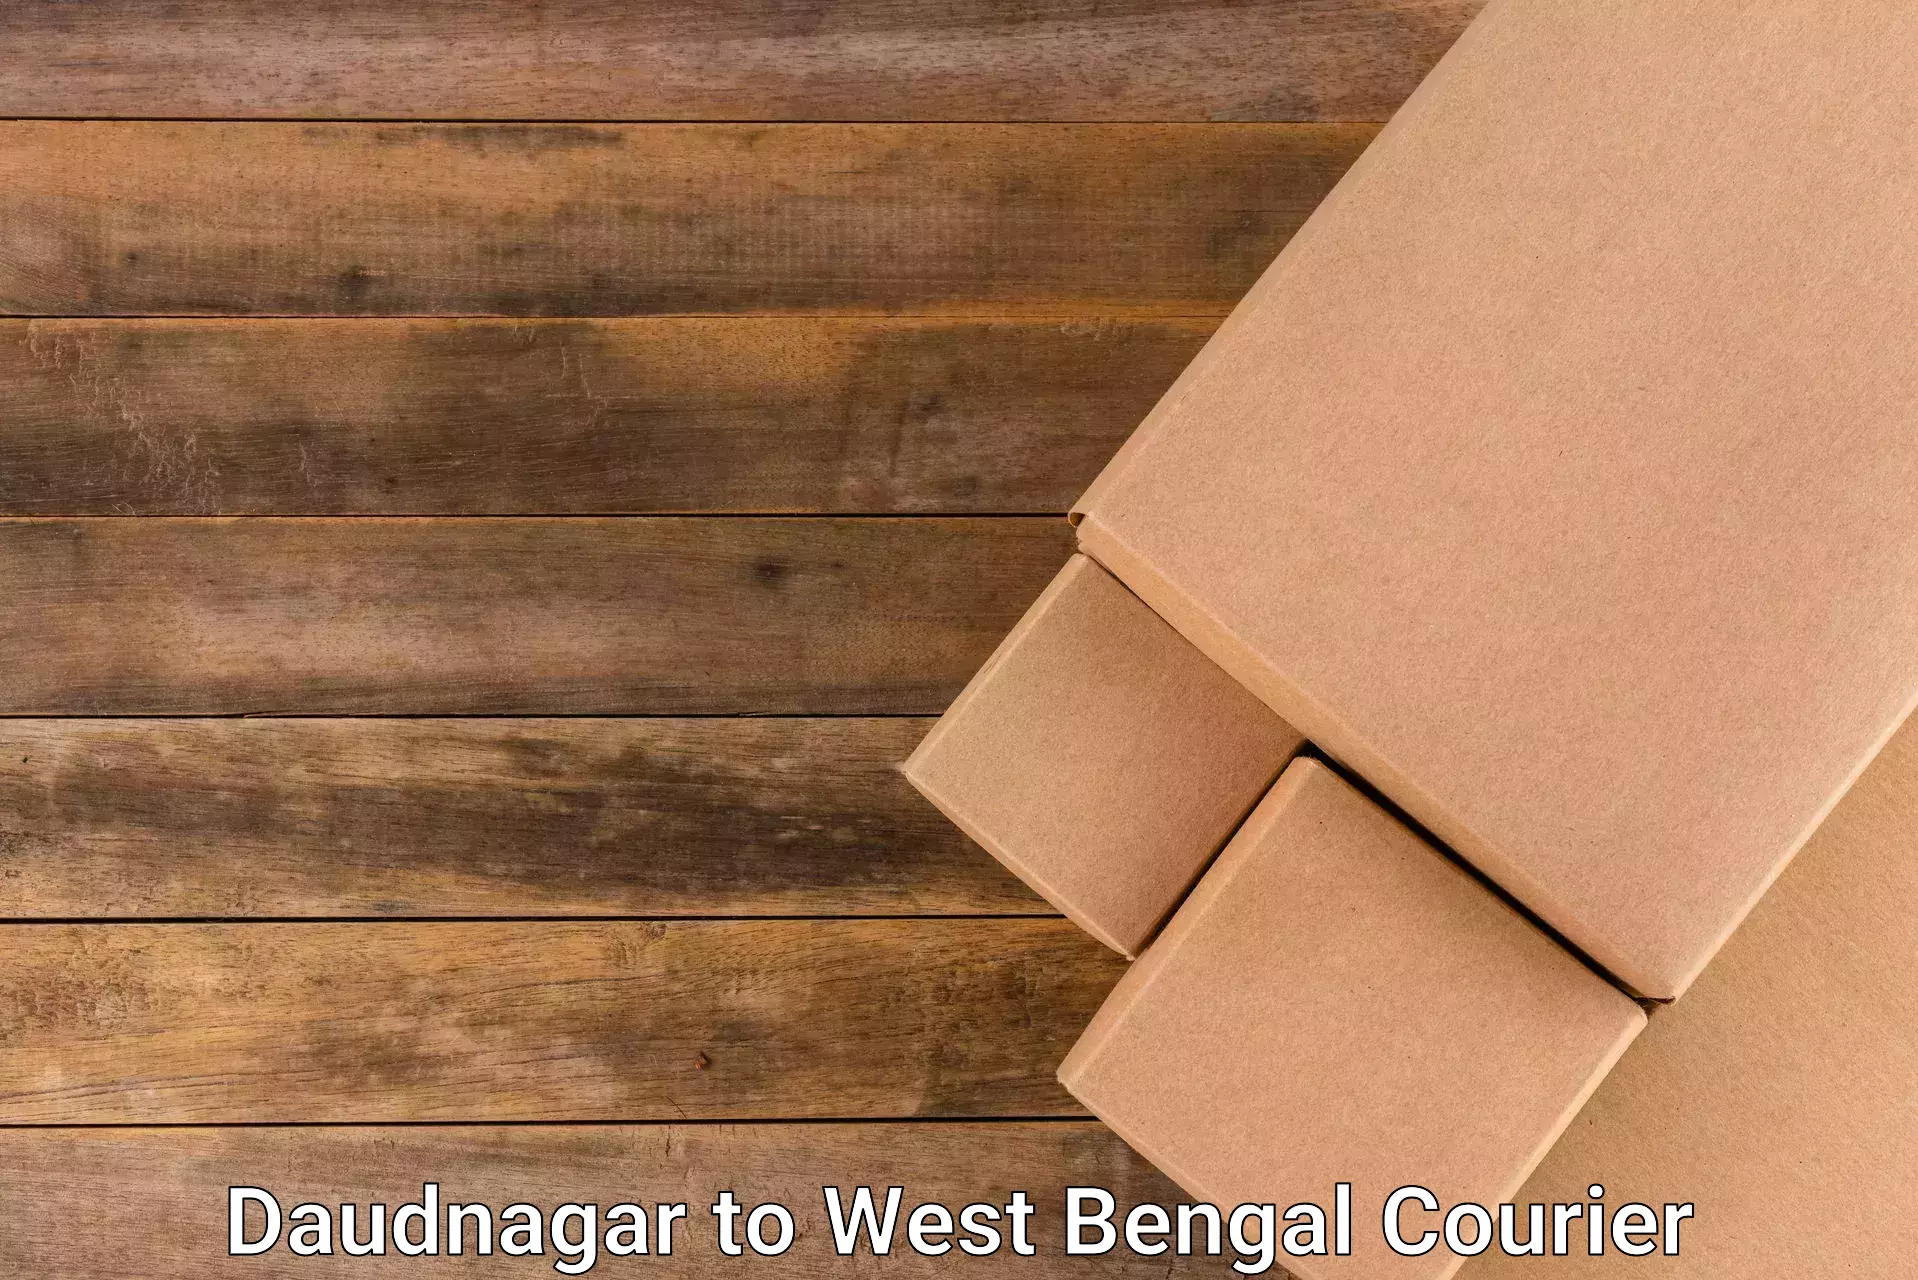 Cost-effective freight solutions Daudnagar to Khanakul